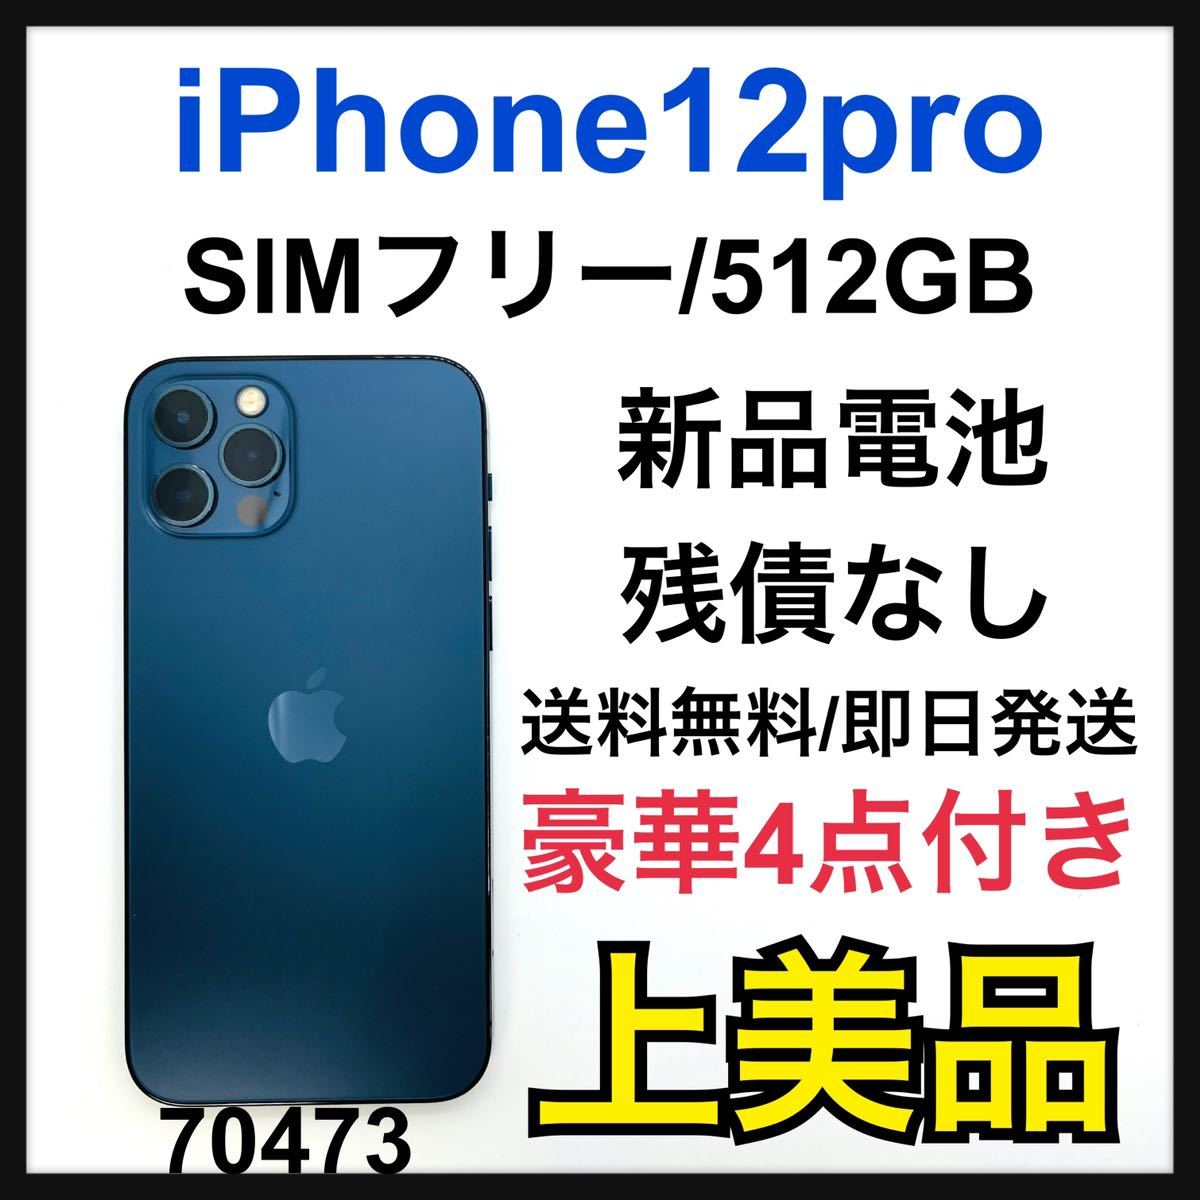 セール A iPhone 12 pro パシフィックブルー 512 GB SIMフリー eu 